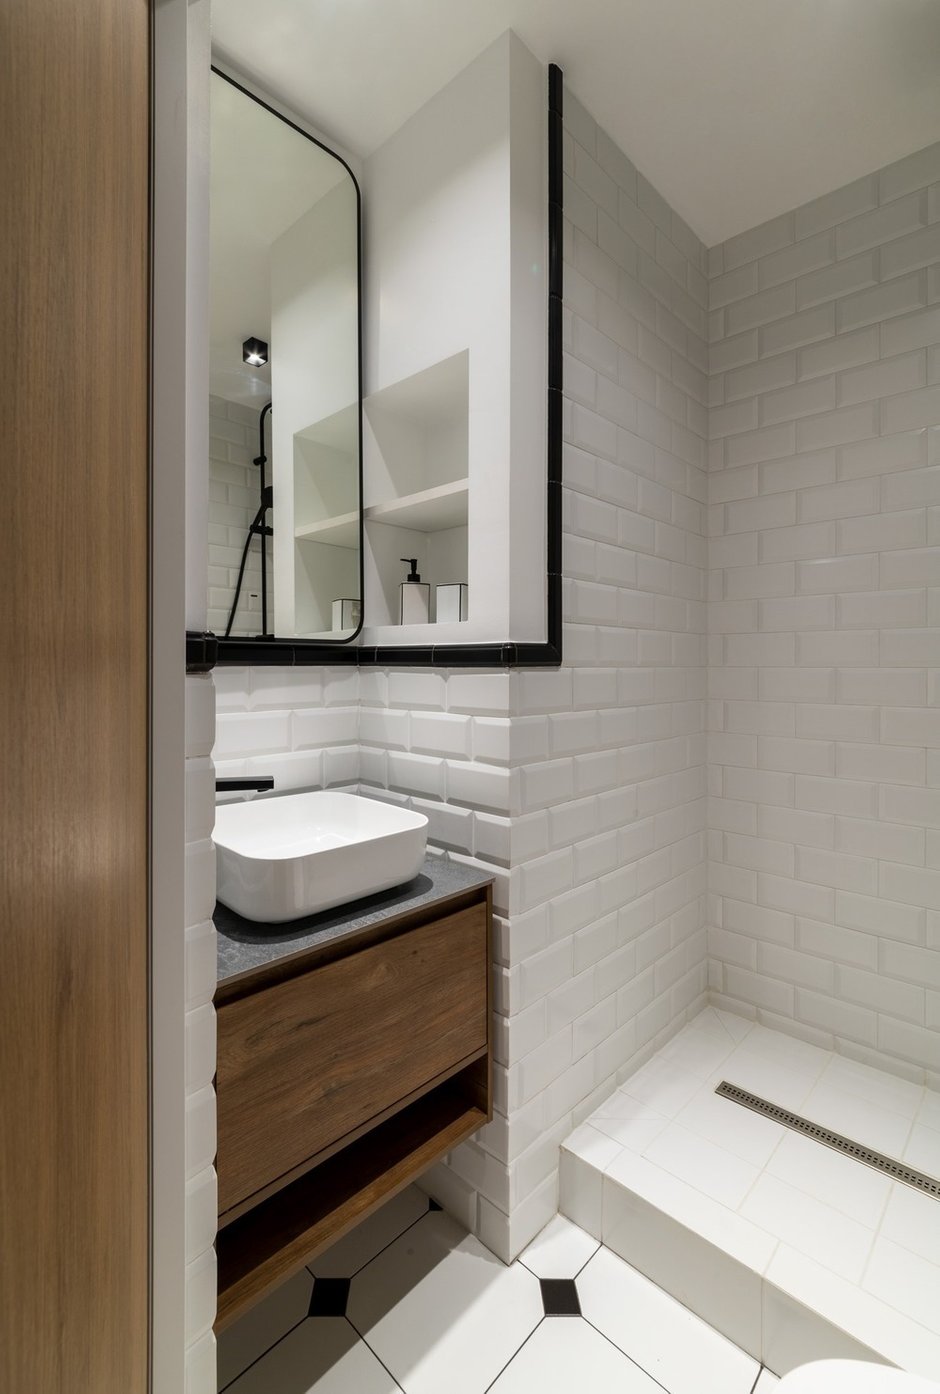 В маленькой ванной рядом со спальней плитка с английским характером («метро» или «свинья»), пол со вставками, на стенах плитка уложена на высоту 1,2 м, а в душевой – вверх. до потолка.